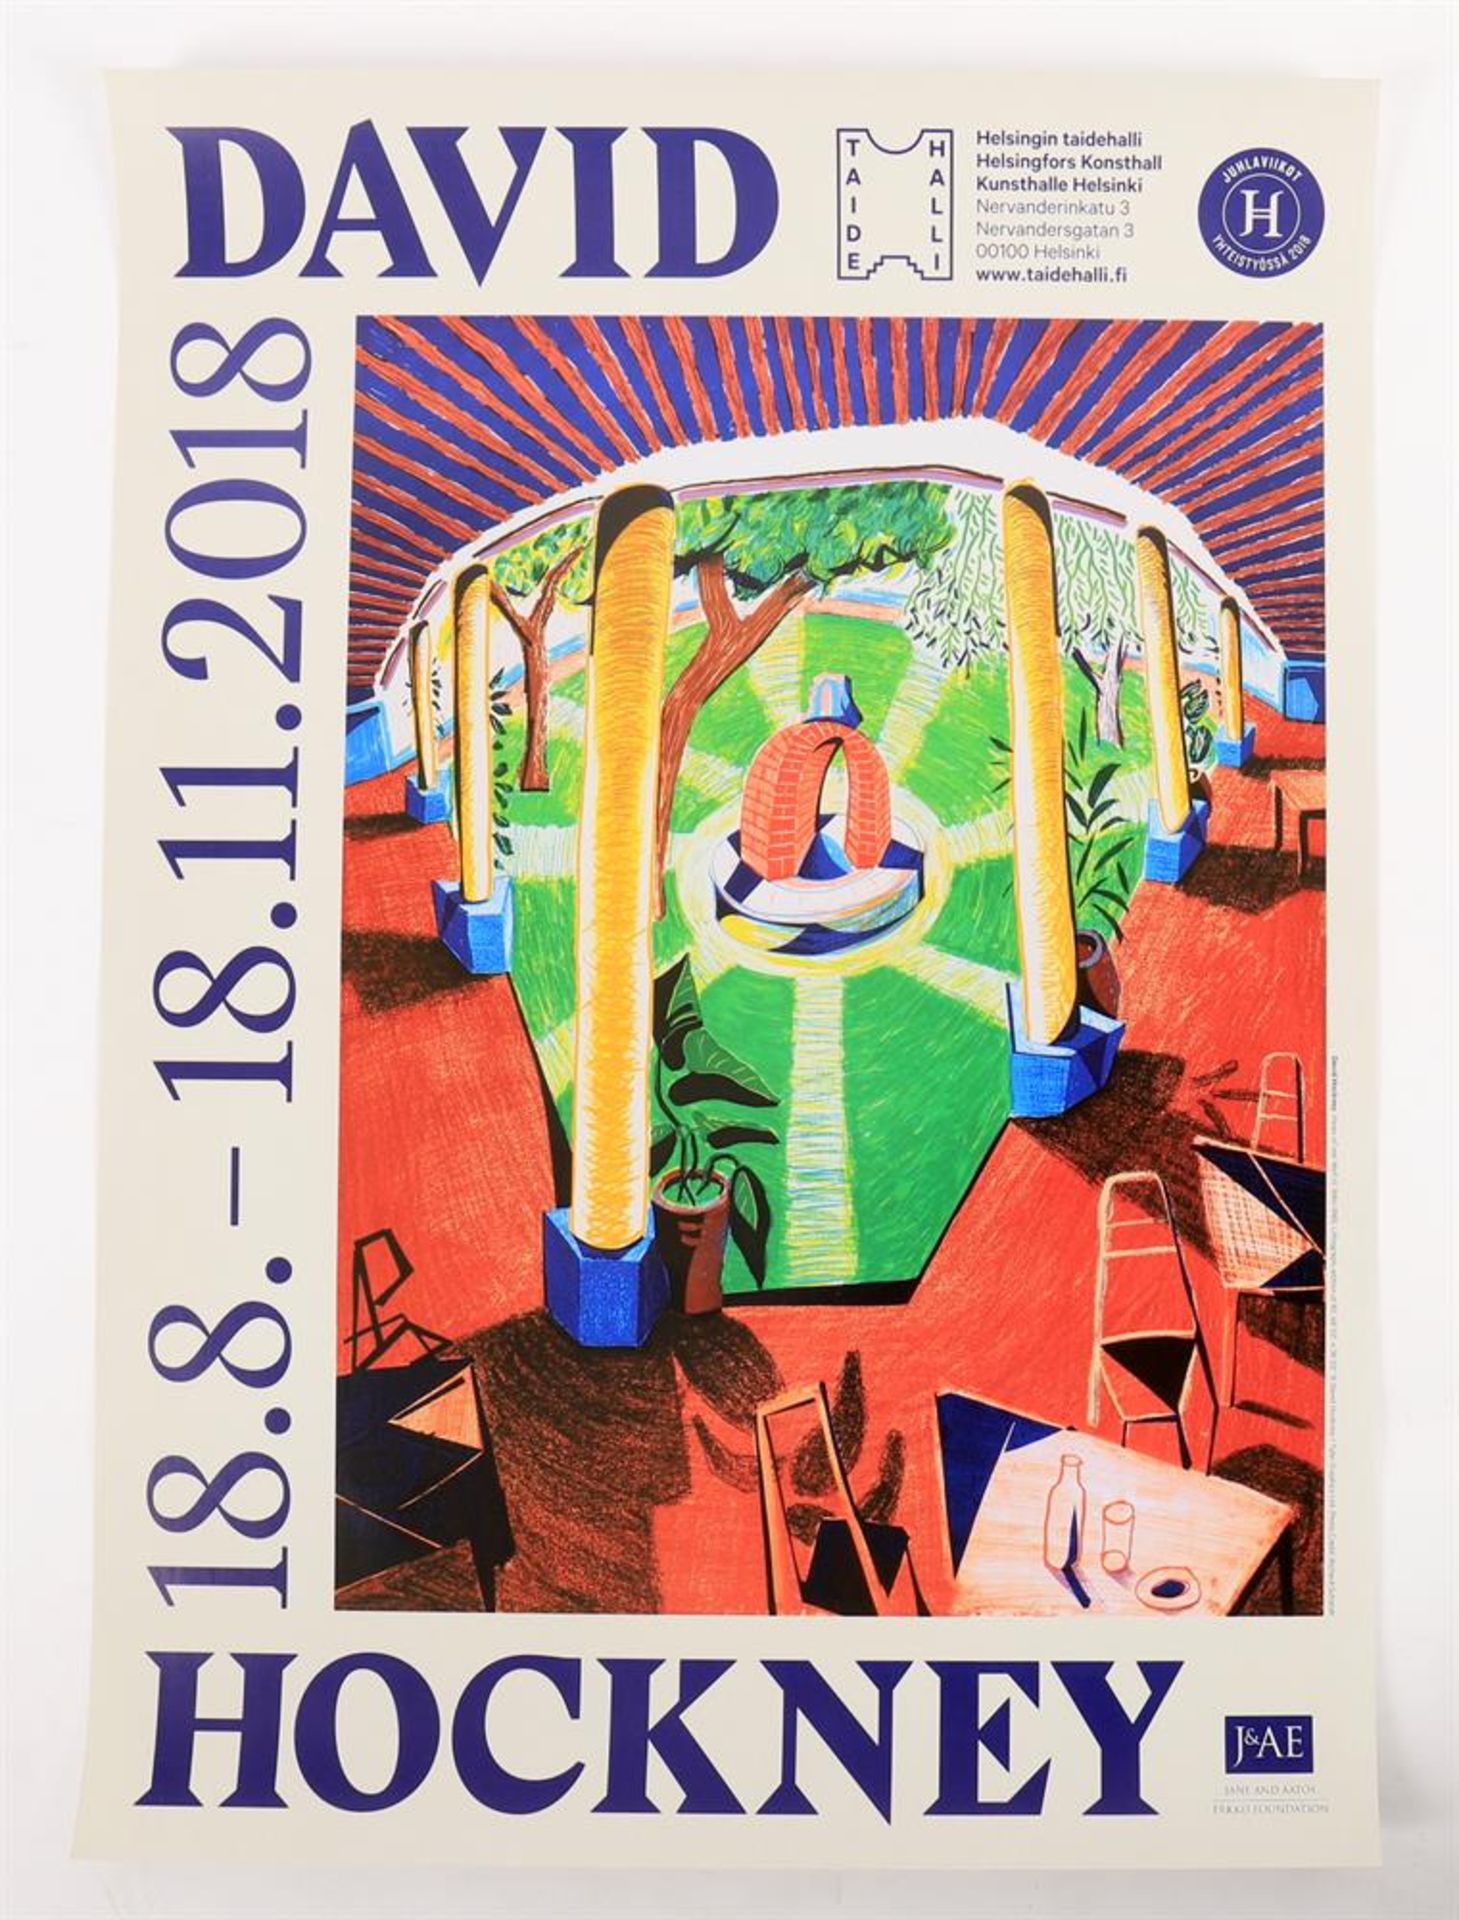 After David Hockney, Kunsthalle Helsinki Exhibition Poster - Image 2 of 3